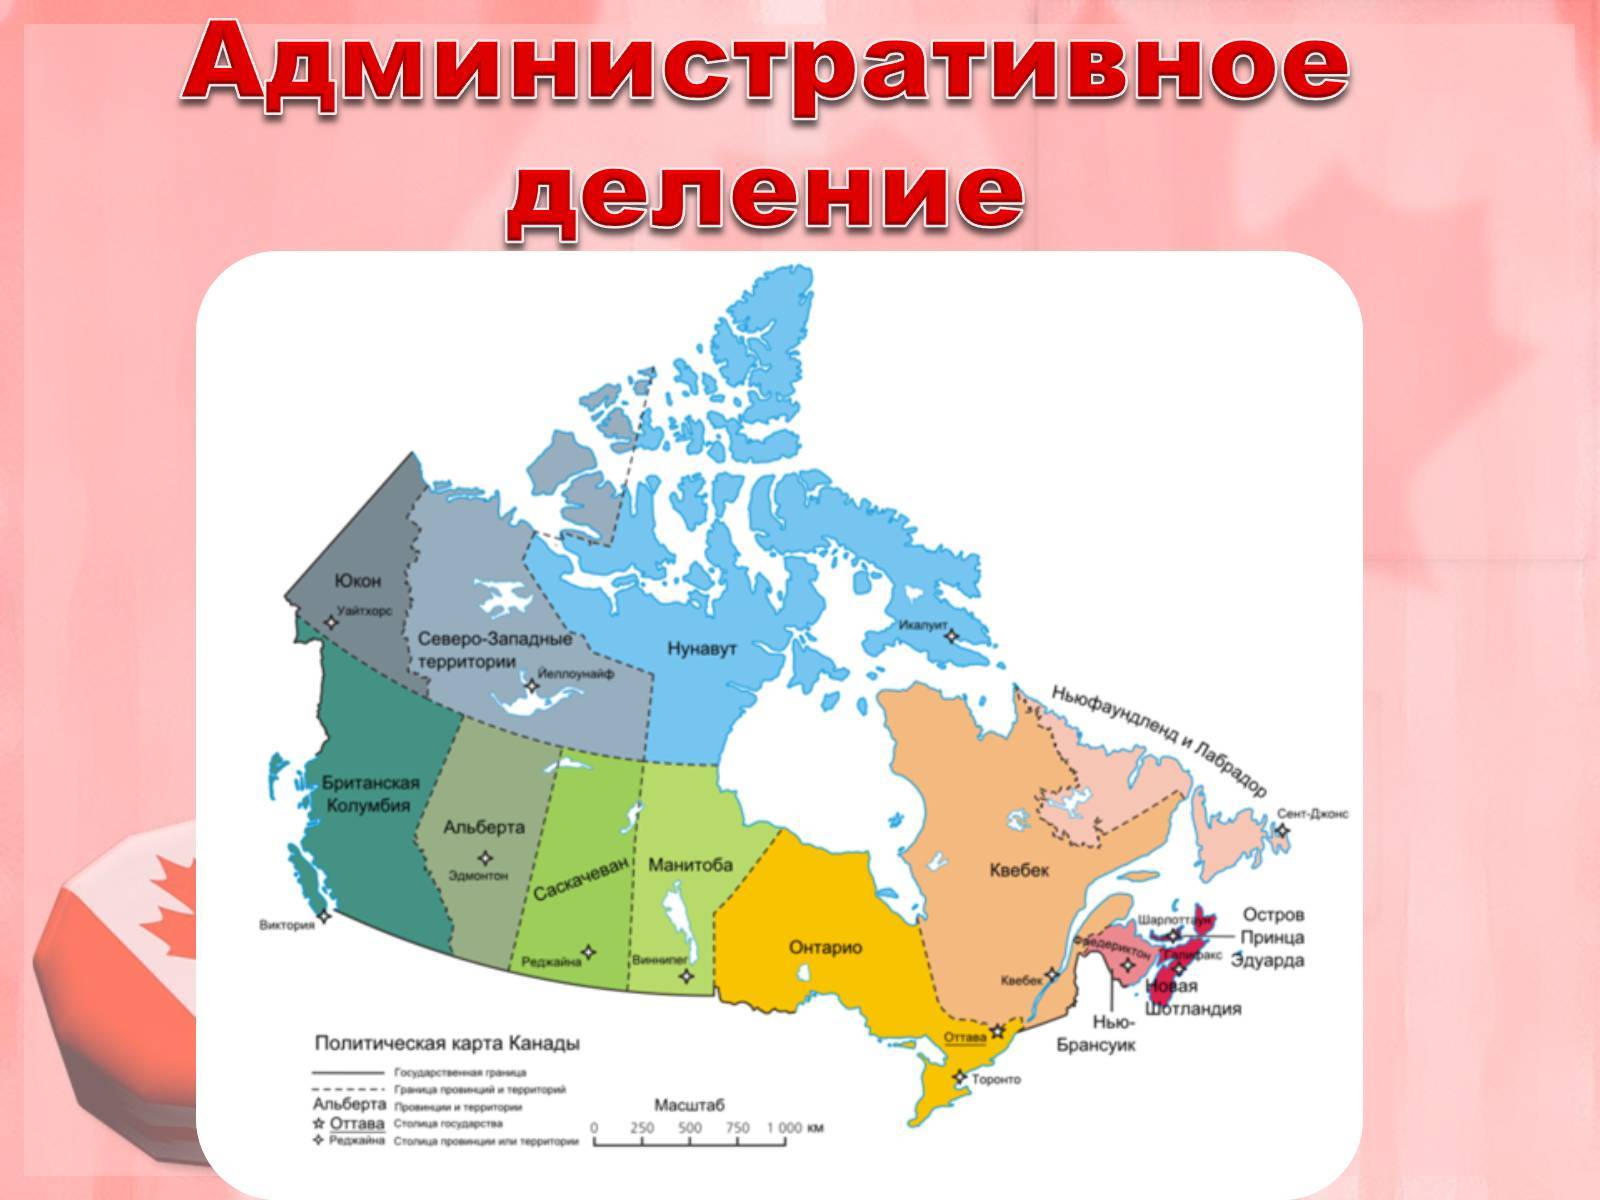 Бизнес-иммиграция в канаду 2020: полный обзор программ